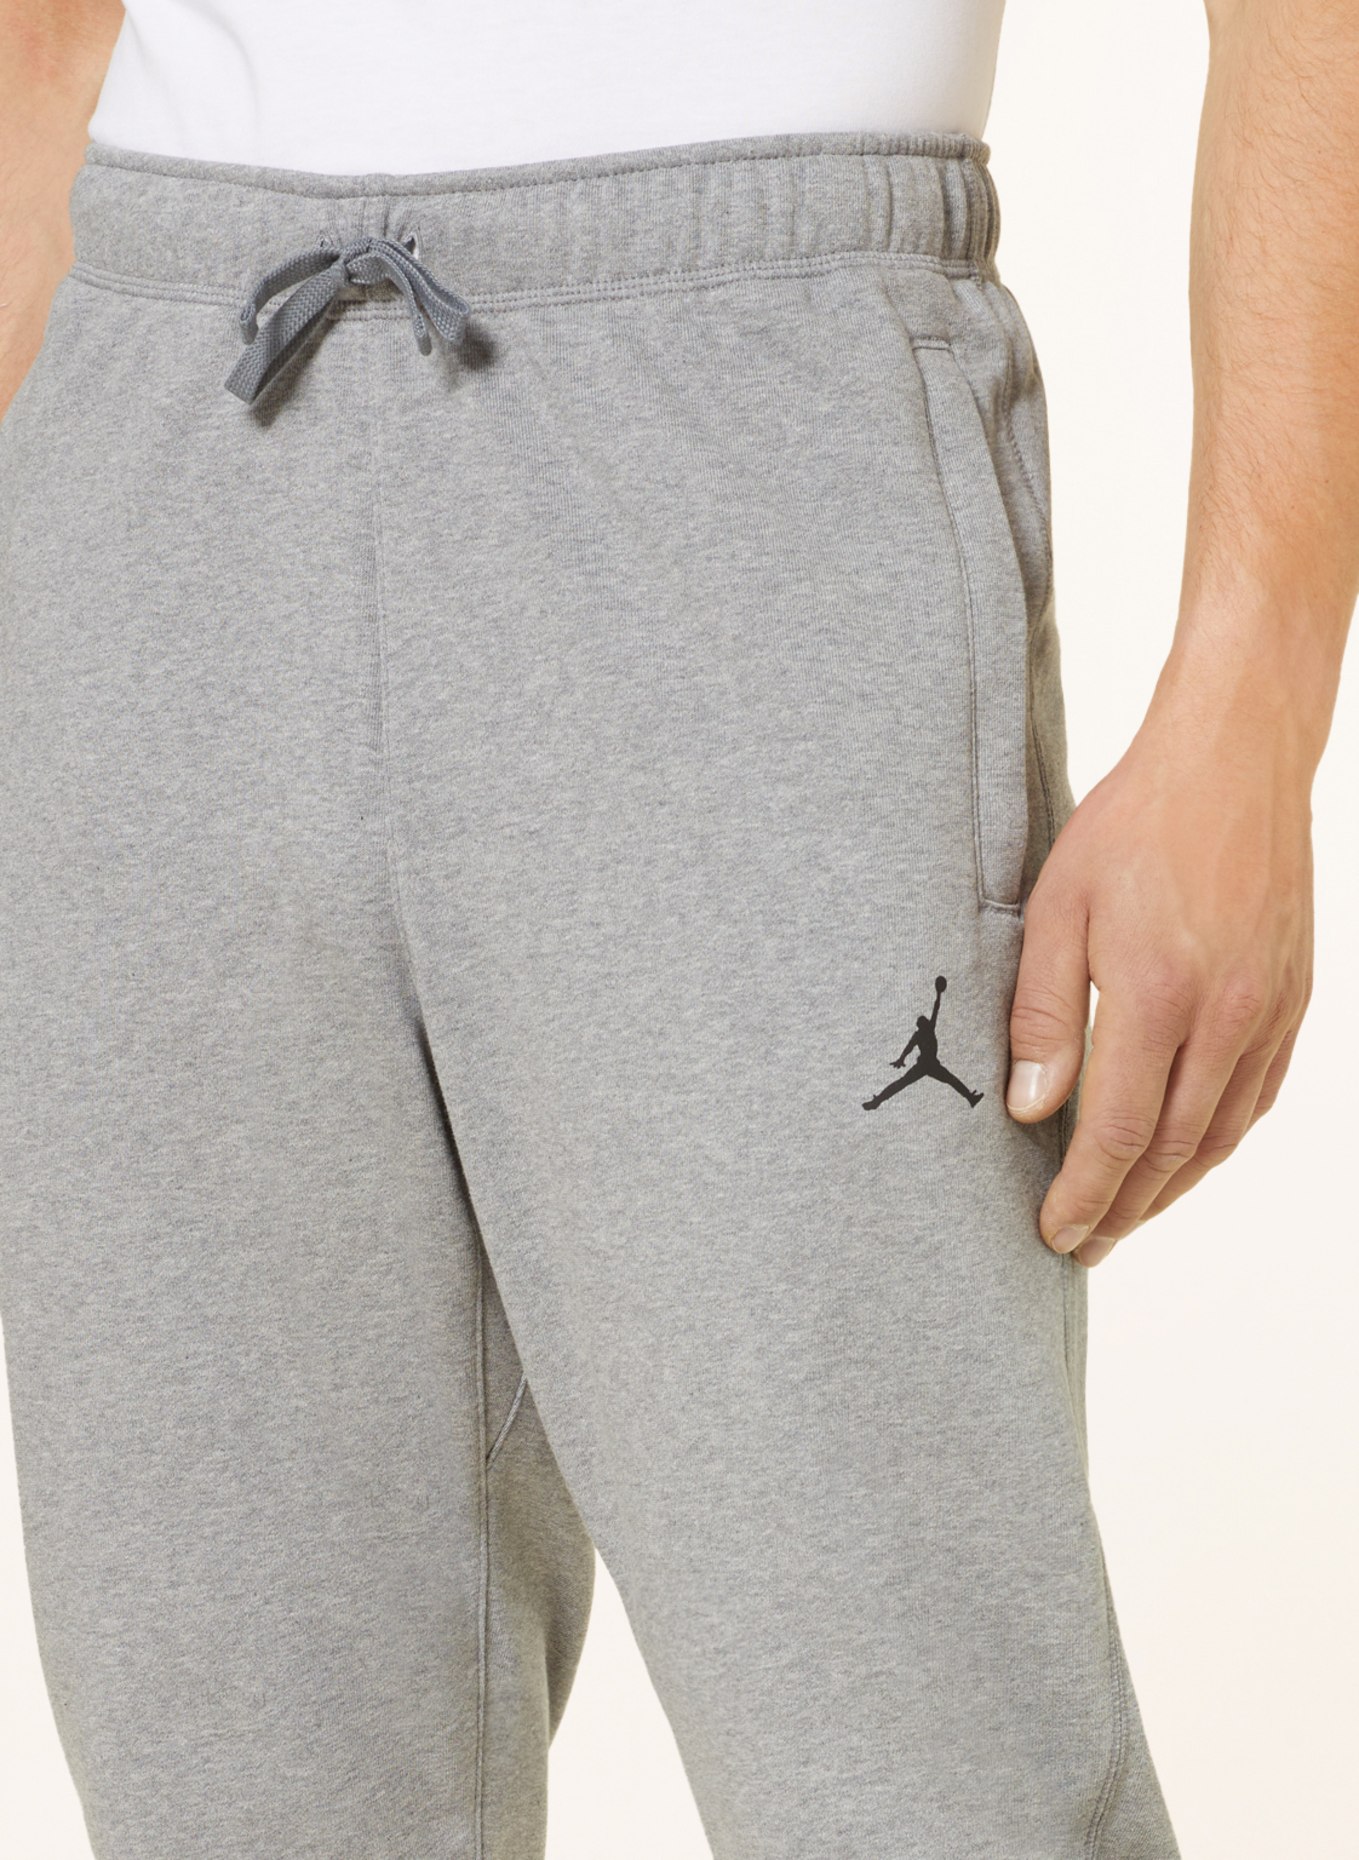 JORDAN Sweatpants DRI-FIT, Color: GRAY (Image 5)